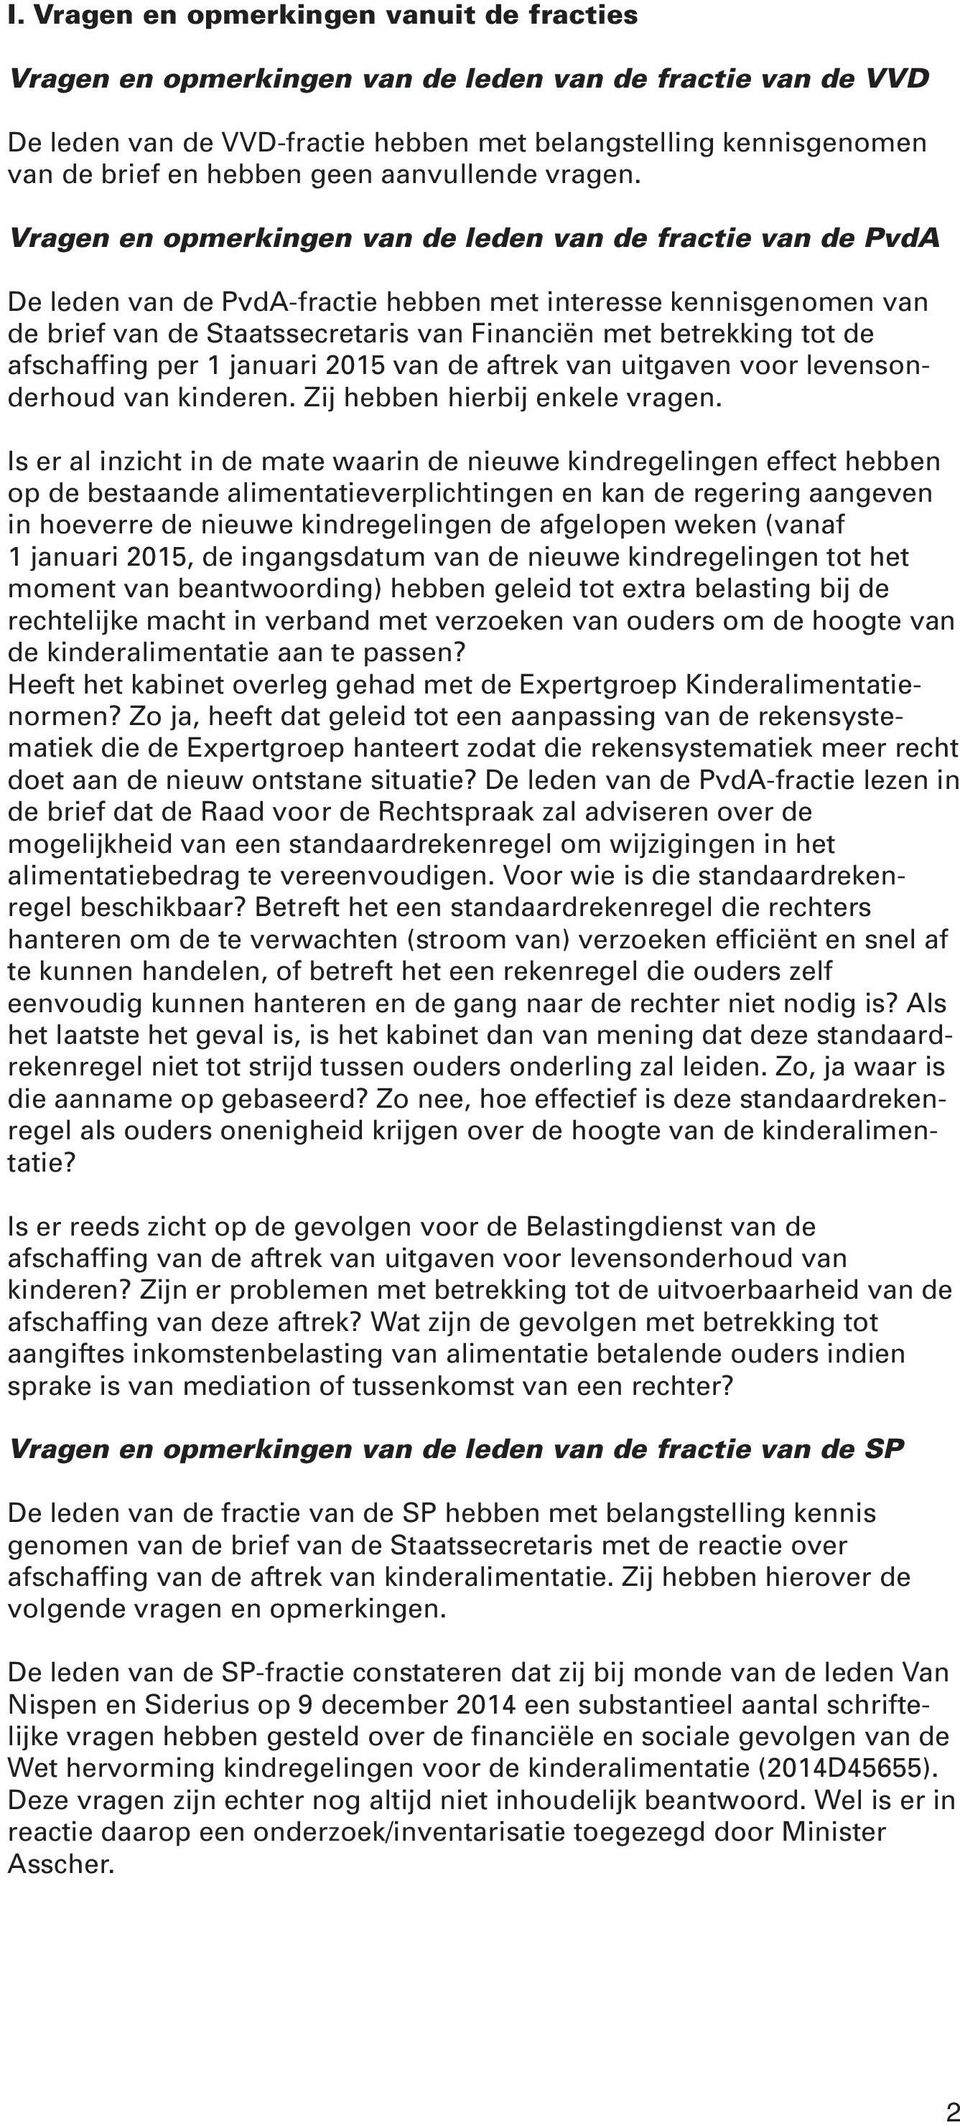 Vragen en opmerkingen van de leden van de fractie van de PvdA De leden van de PvdA-fractie hebben met interesse kennisgenomen van de brief van de Staatssecretaris van Financiën met betrekking tot de